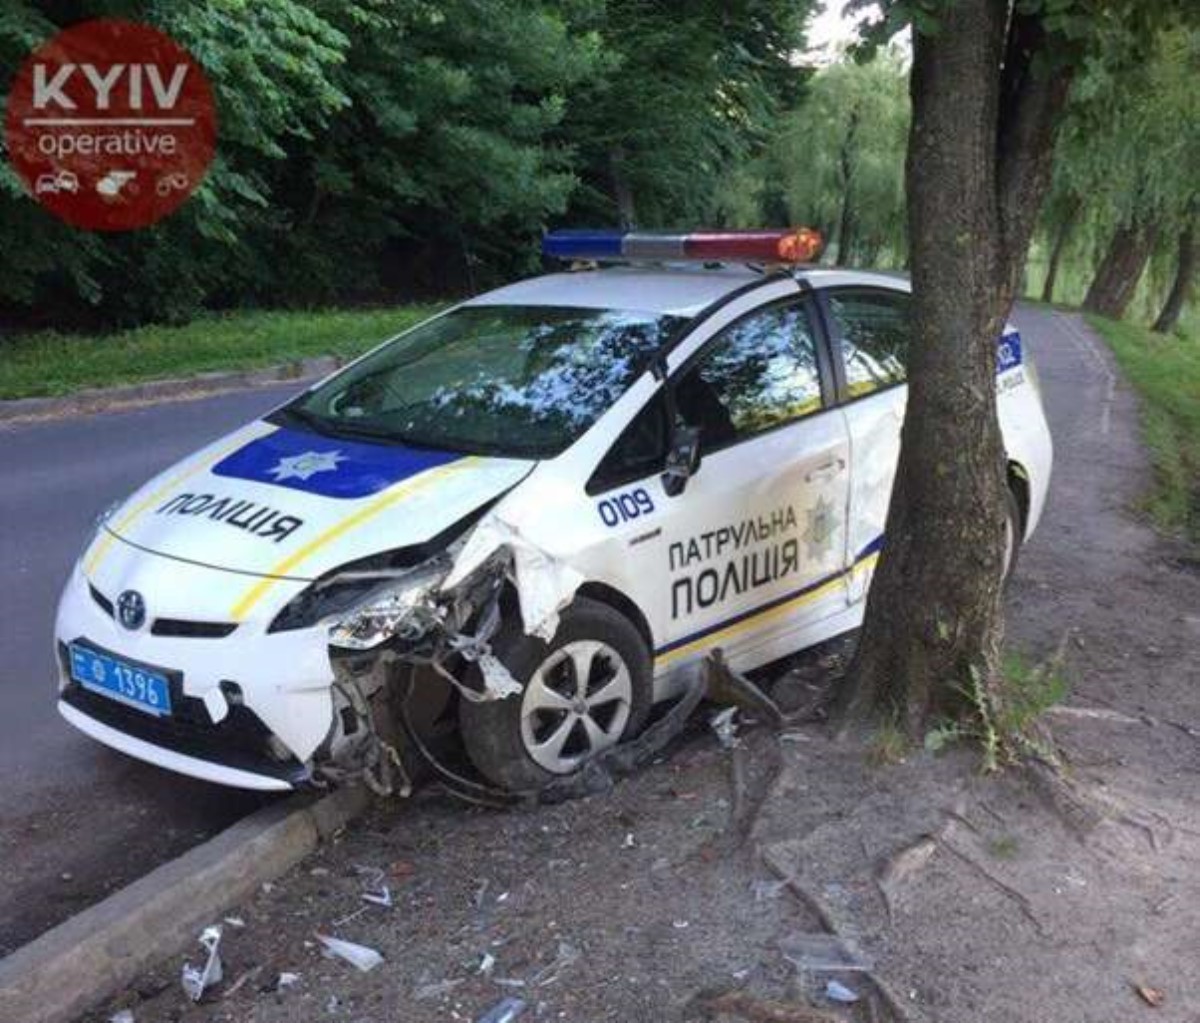 Погони не было: в Киеве нашли разбитый и брошенный автомобиль полиции